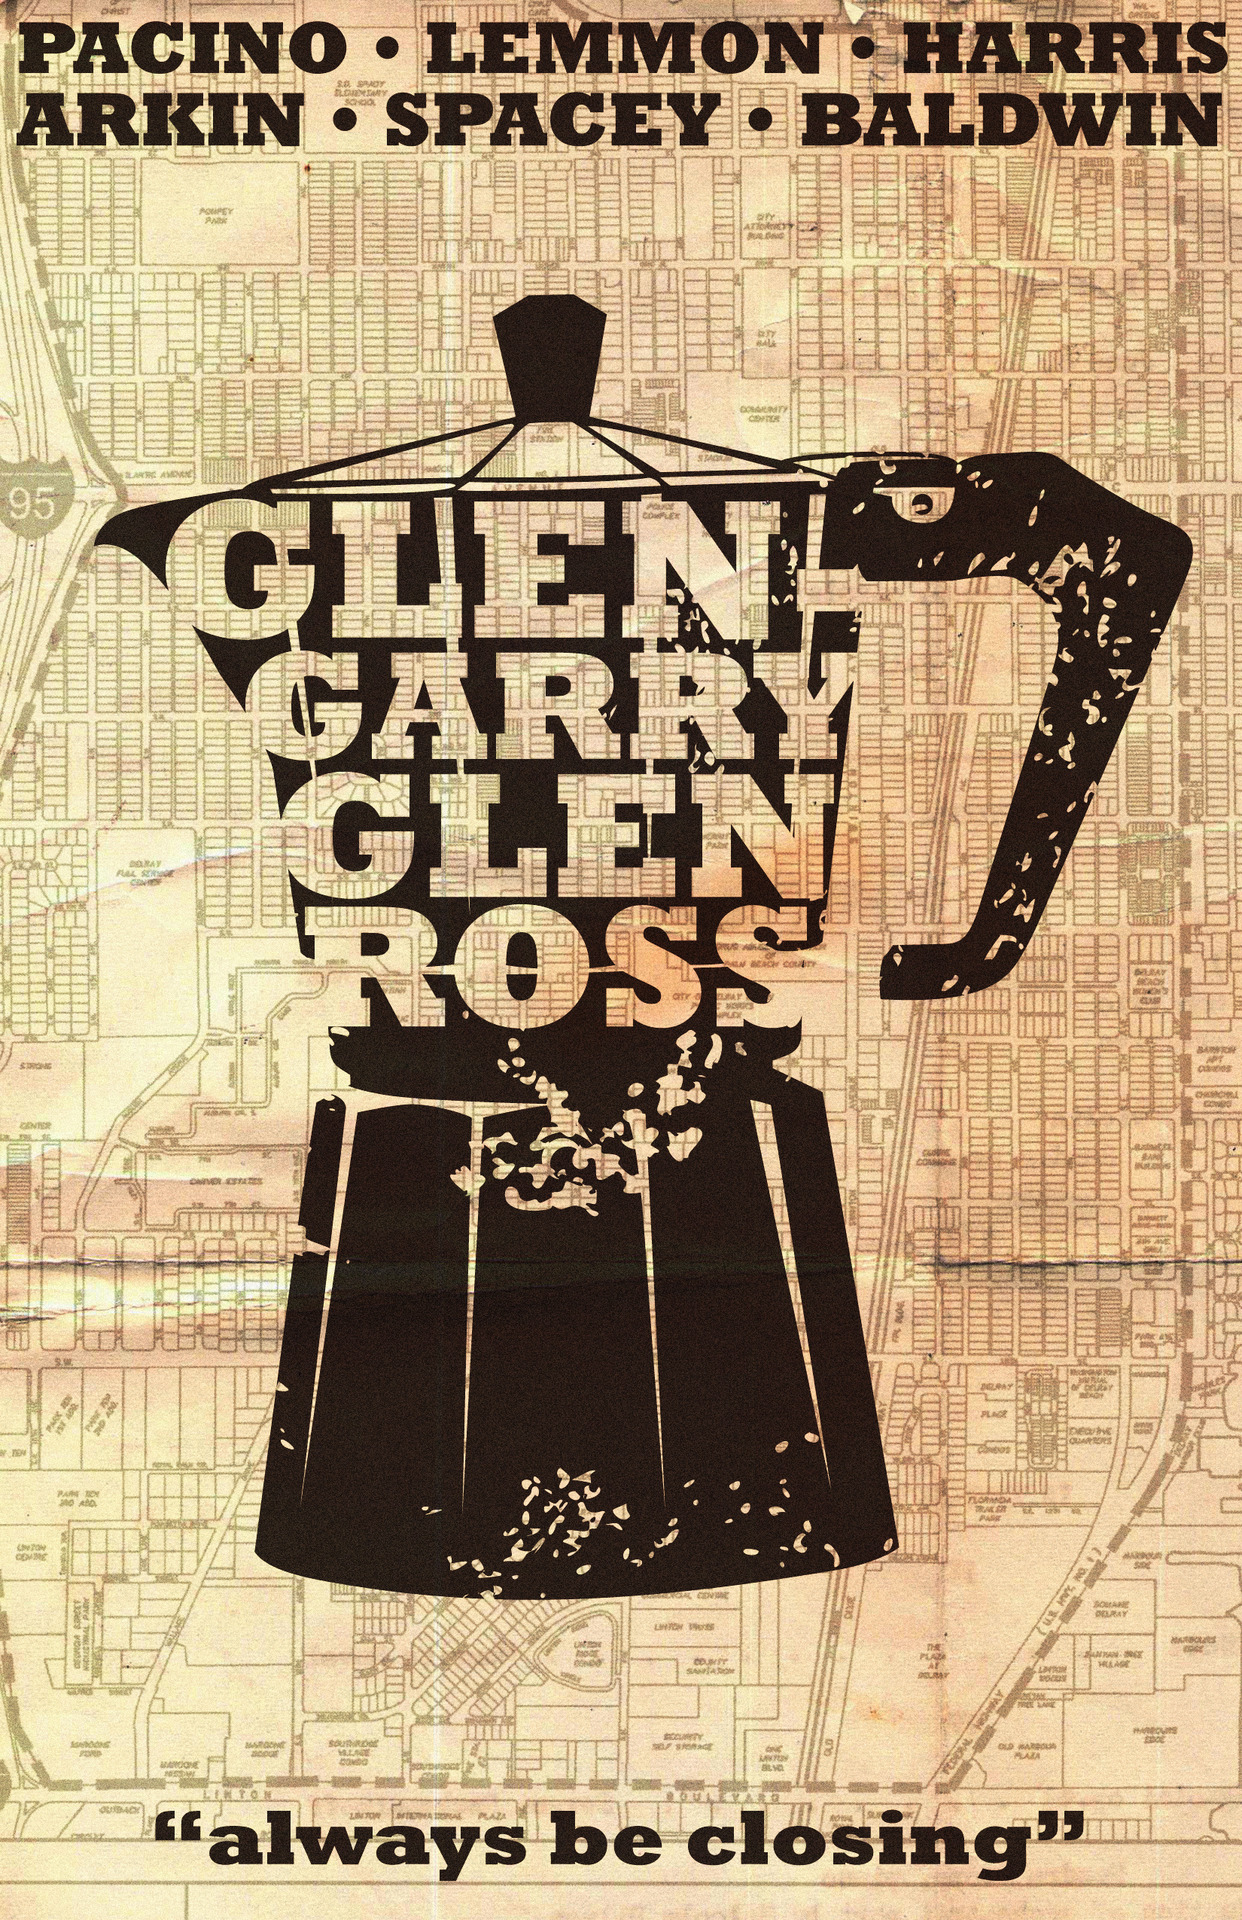 glengarry-glen-ross